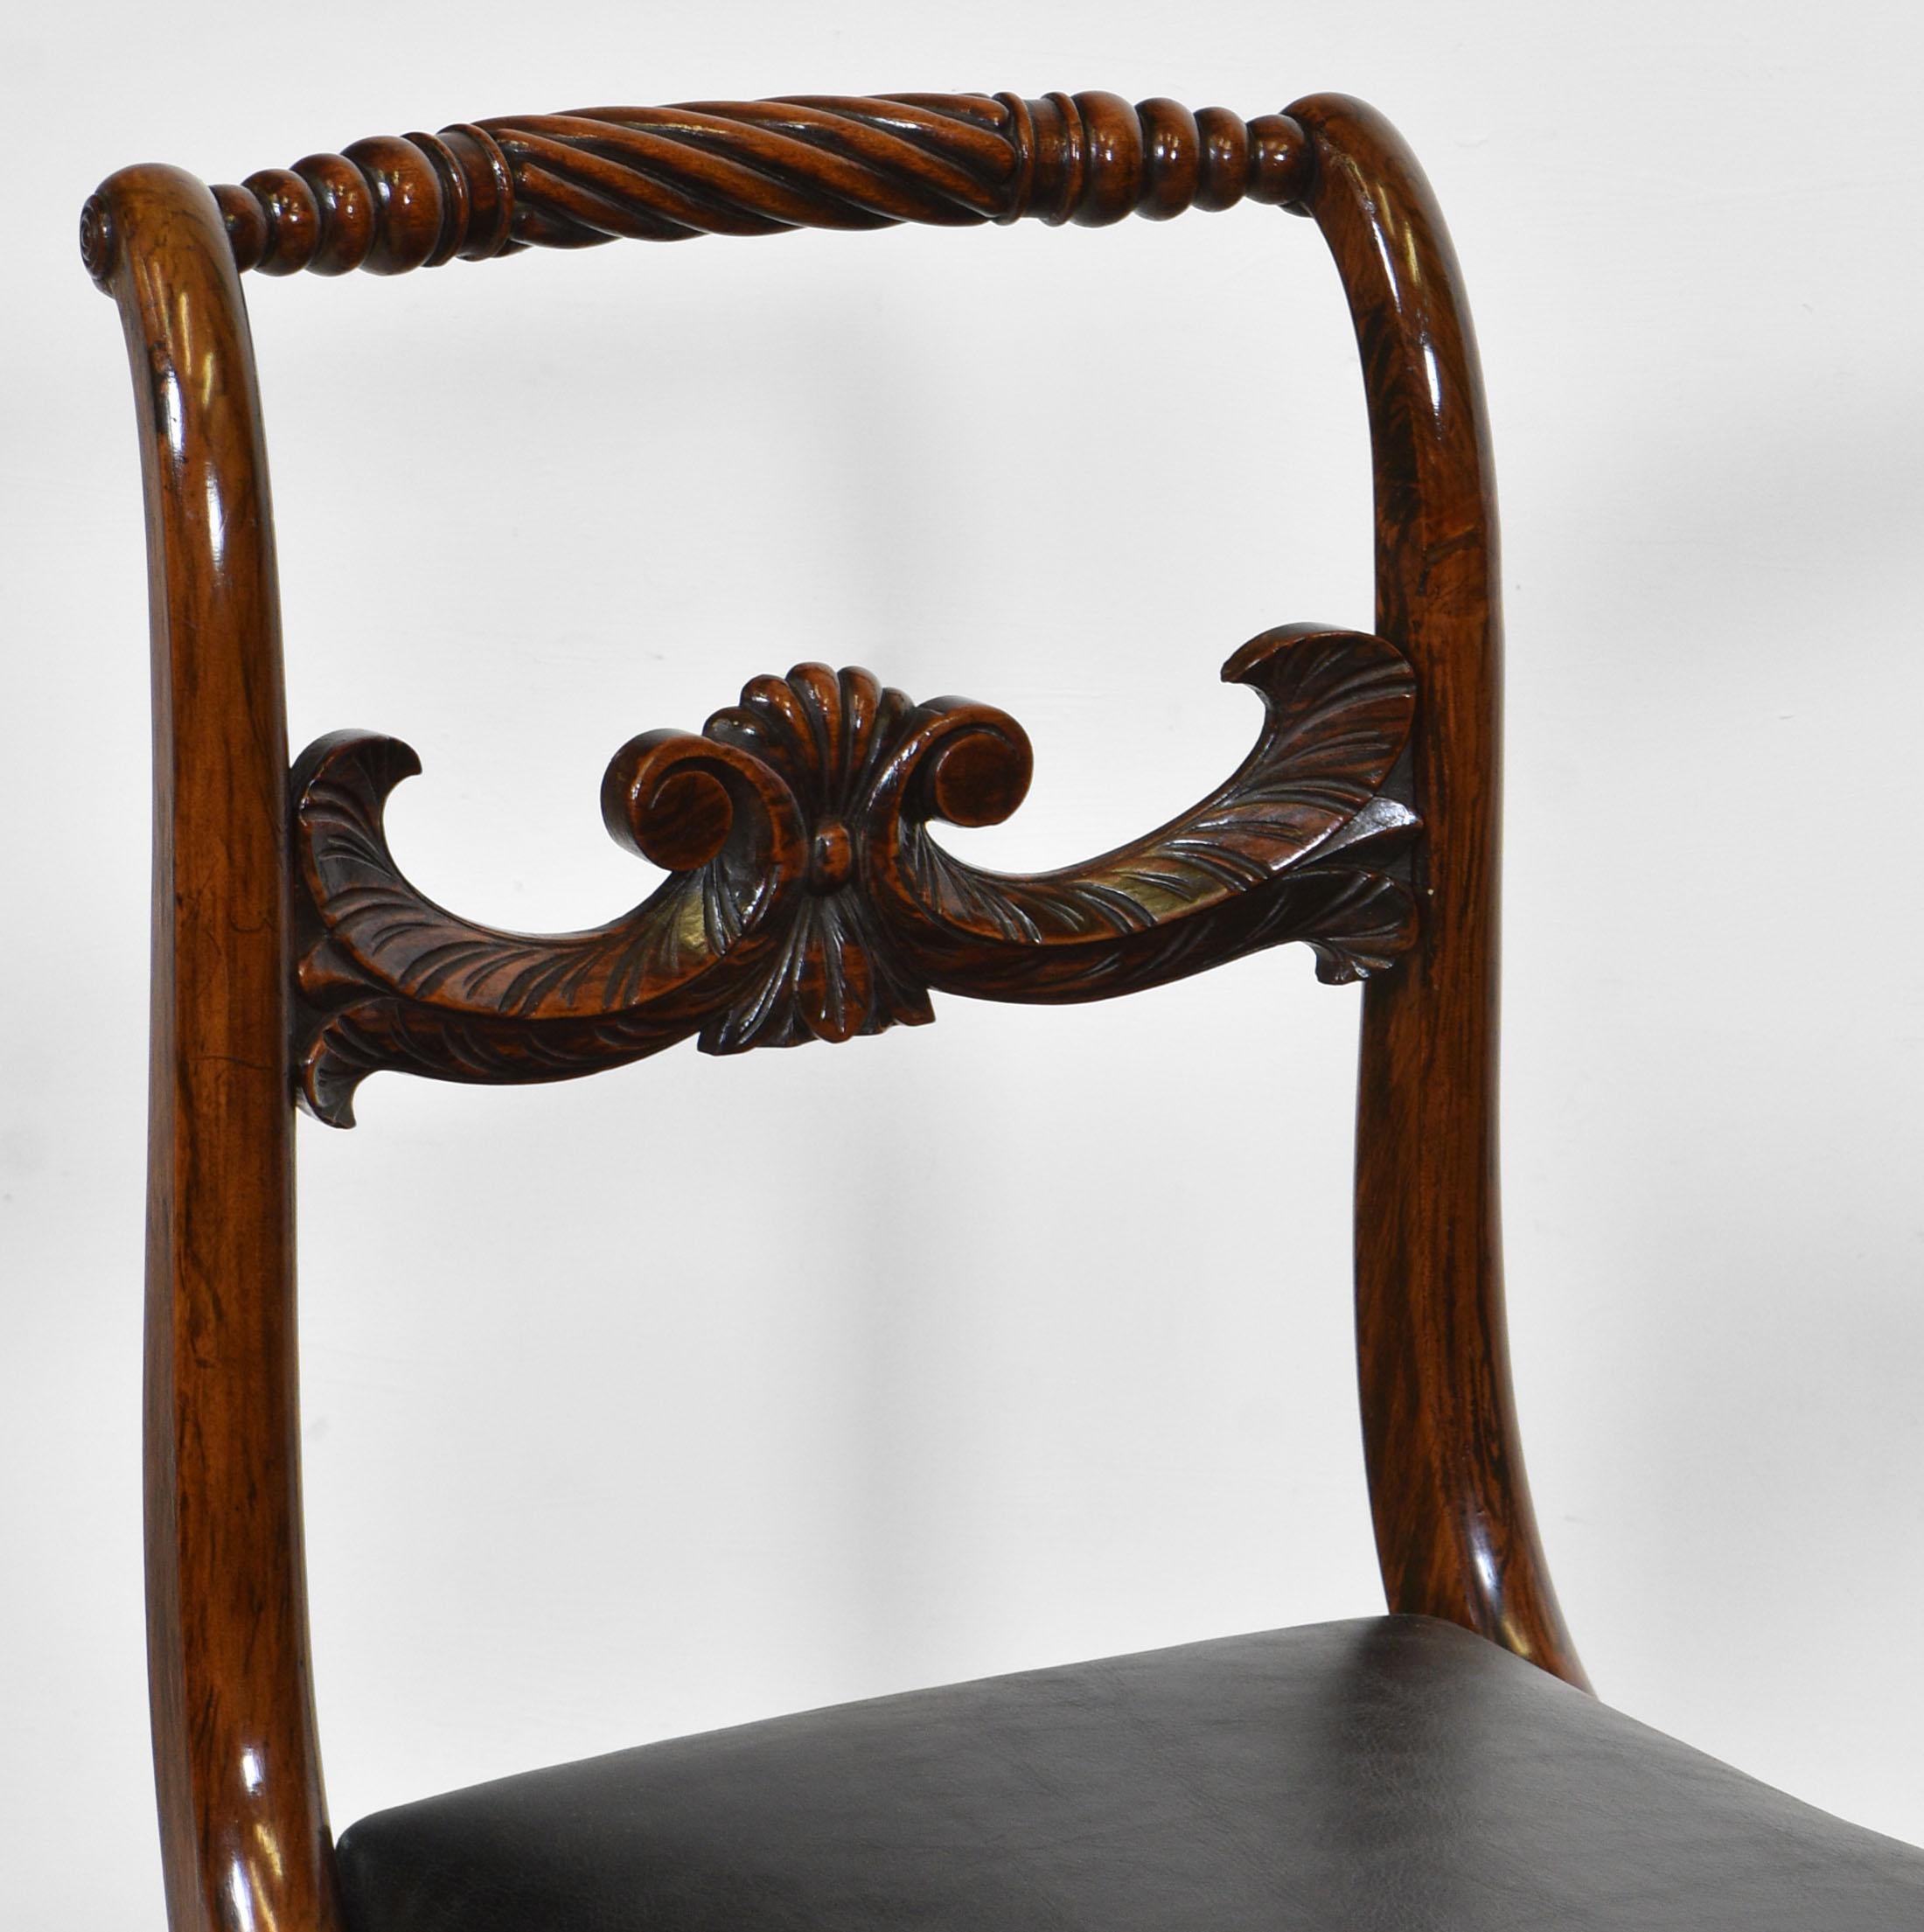 Ein Paar Regency-Stühle mit geschwungener Rückenlehne aus Palisanderimitat und mit schwarzem Leder bezogenen Sitzen. Circa 1820.

Die Stühle haben eine gedrechselte obere Schiene mit einer geschnitzten mittleren Schiene und enden auf Säbelbeinen.